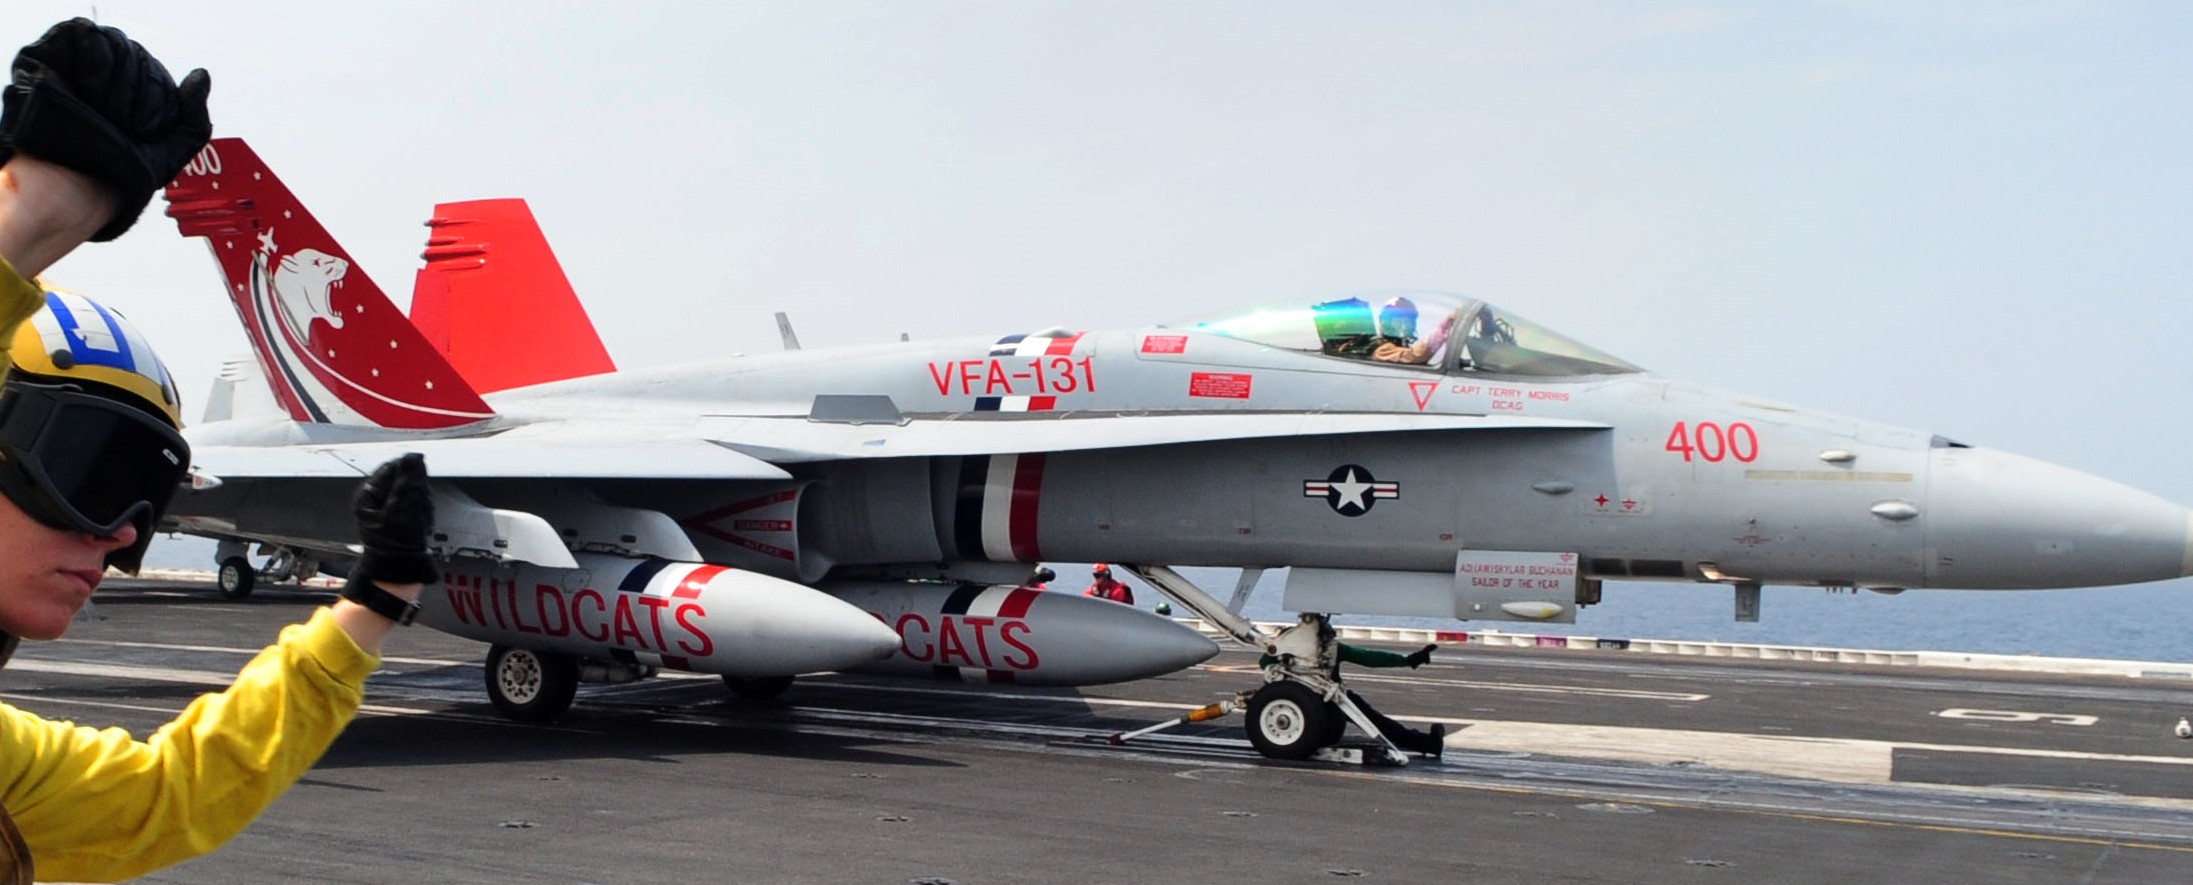 vfa-131 wildcats strike fighter squadron f/a-18c hornet cvw-7 uss dwight d. eisenhower cvn-69 2012 71